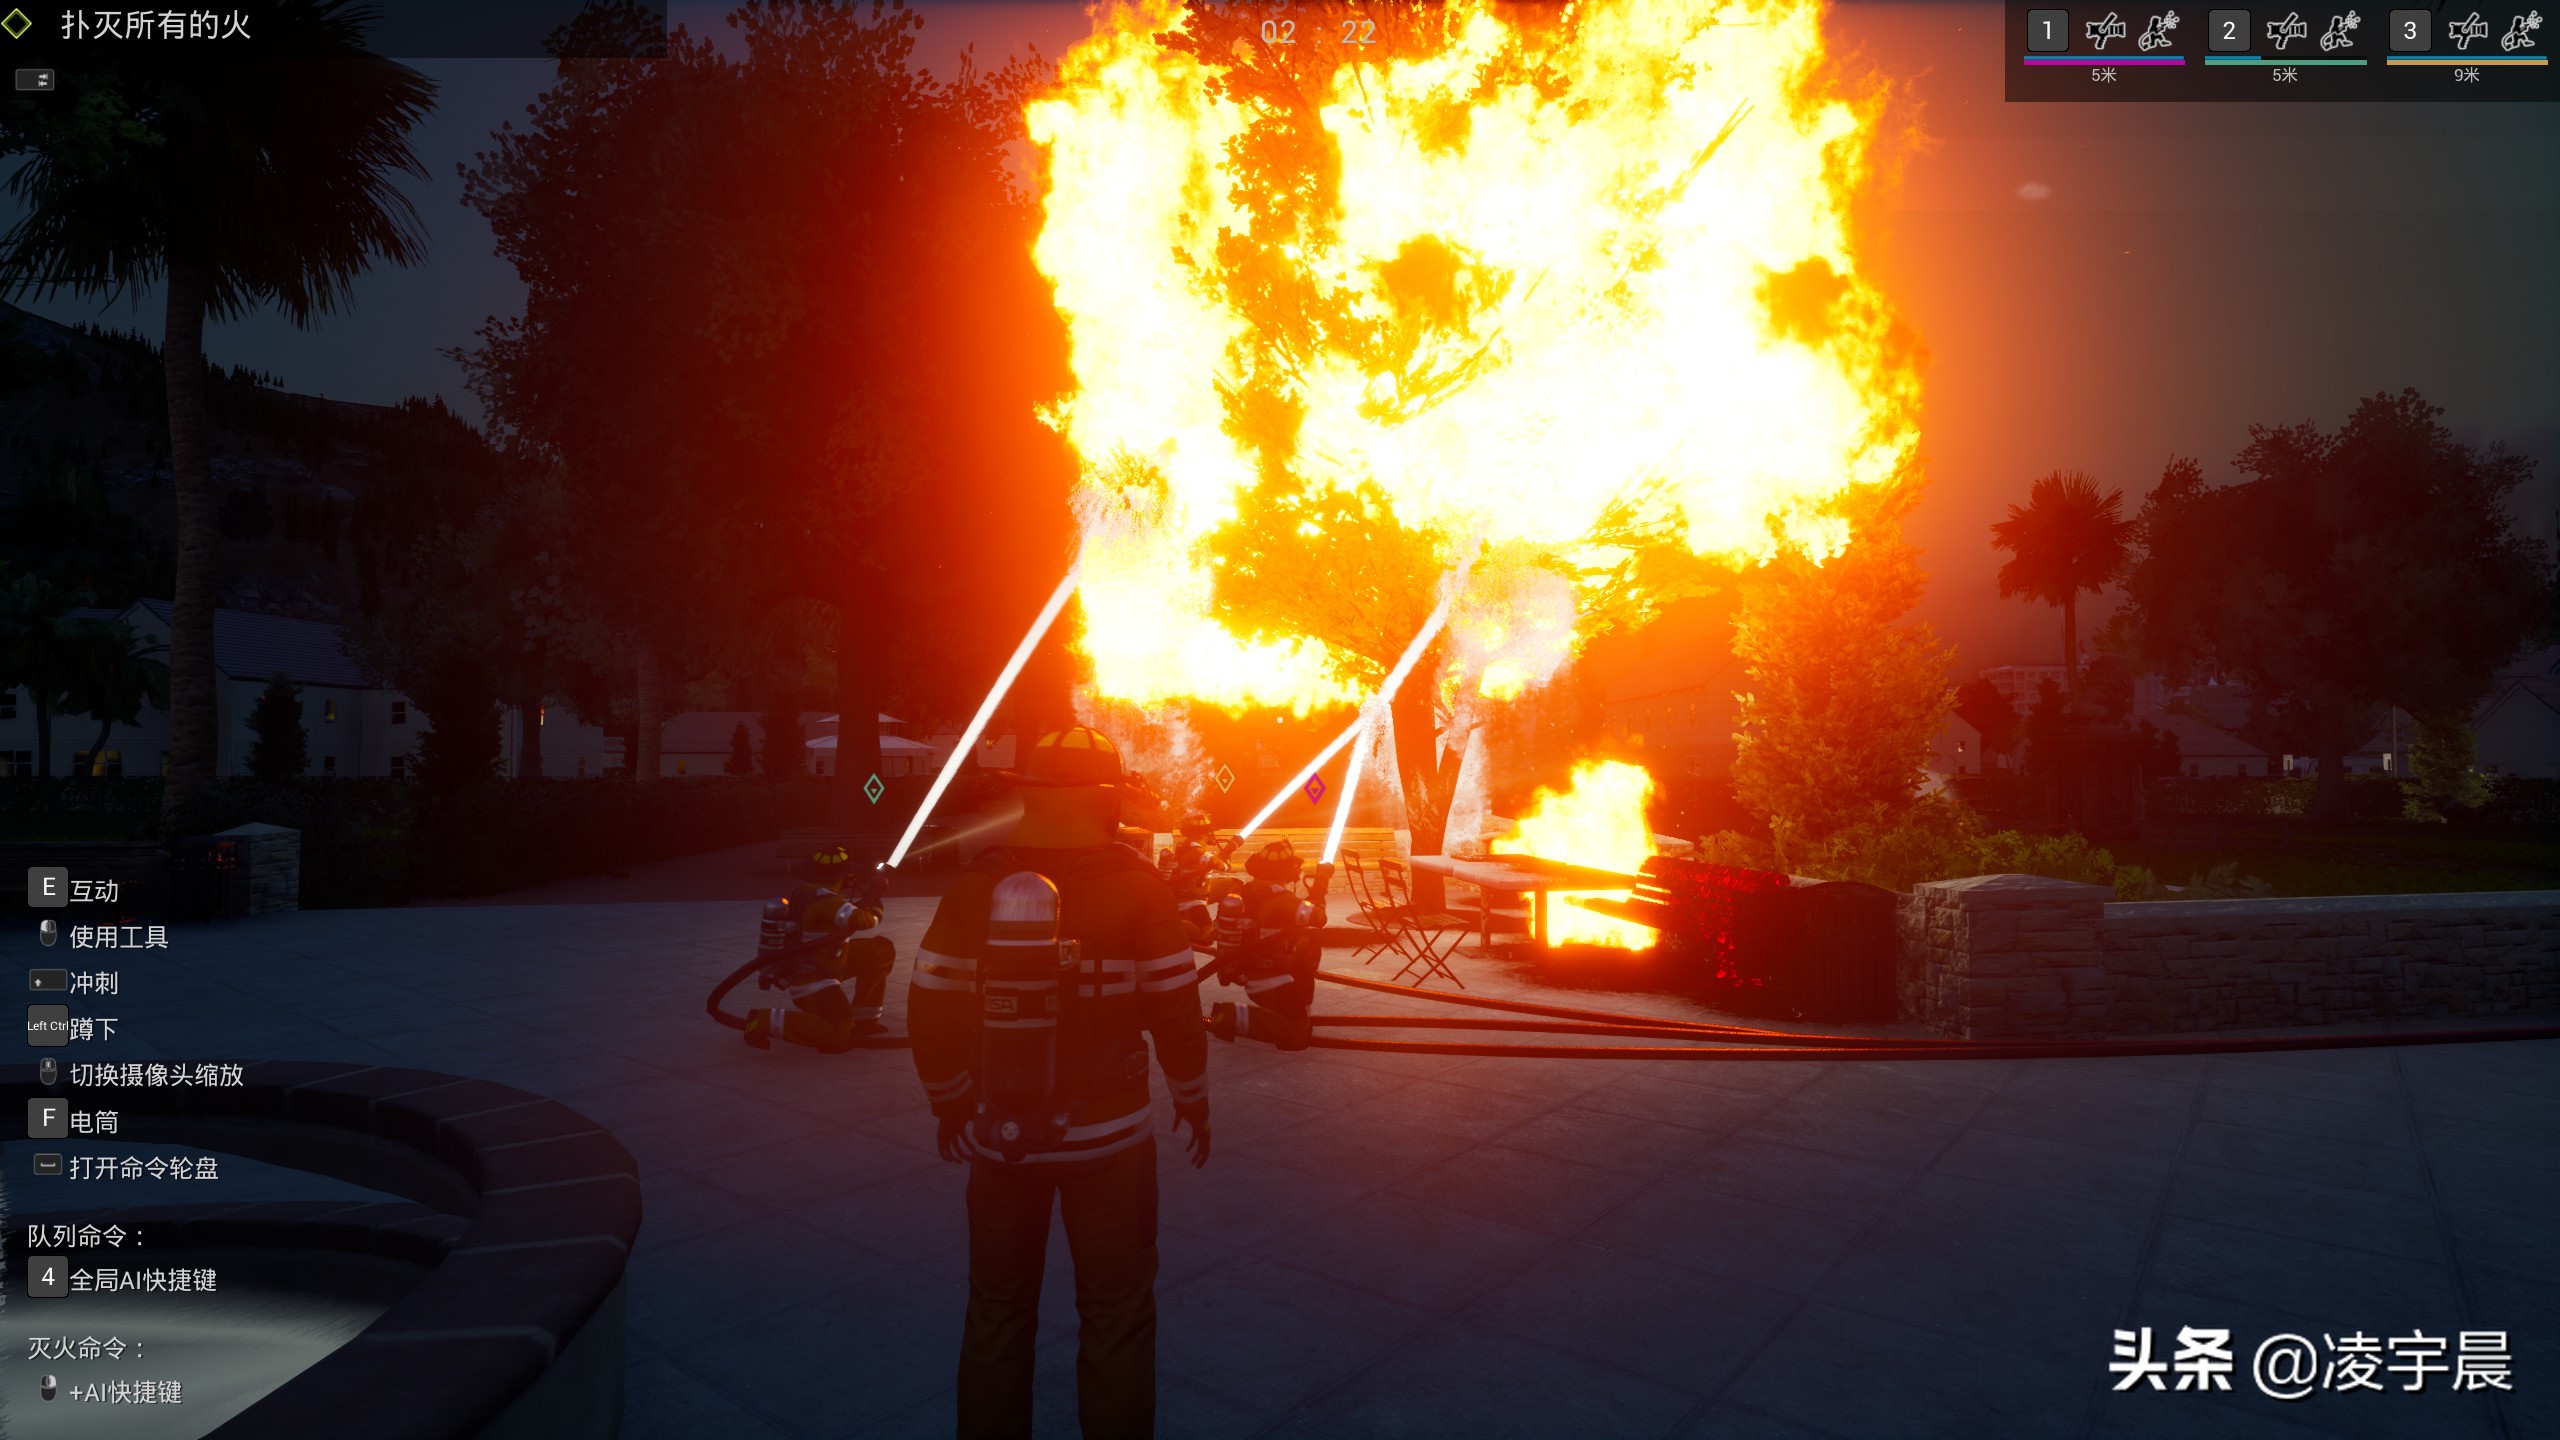 《模拟消防英豪》——值得一试的消防模拟类游戏